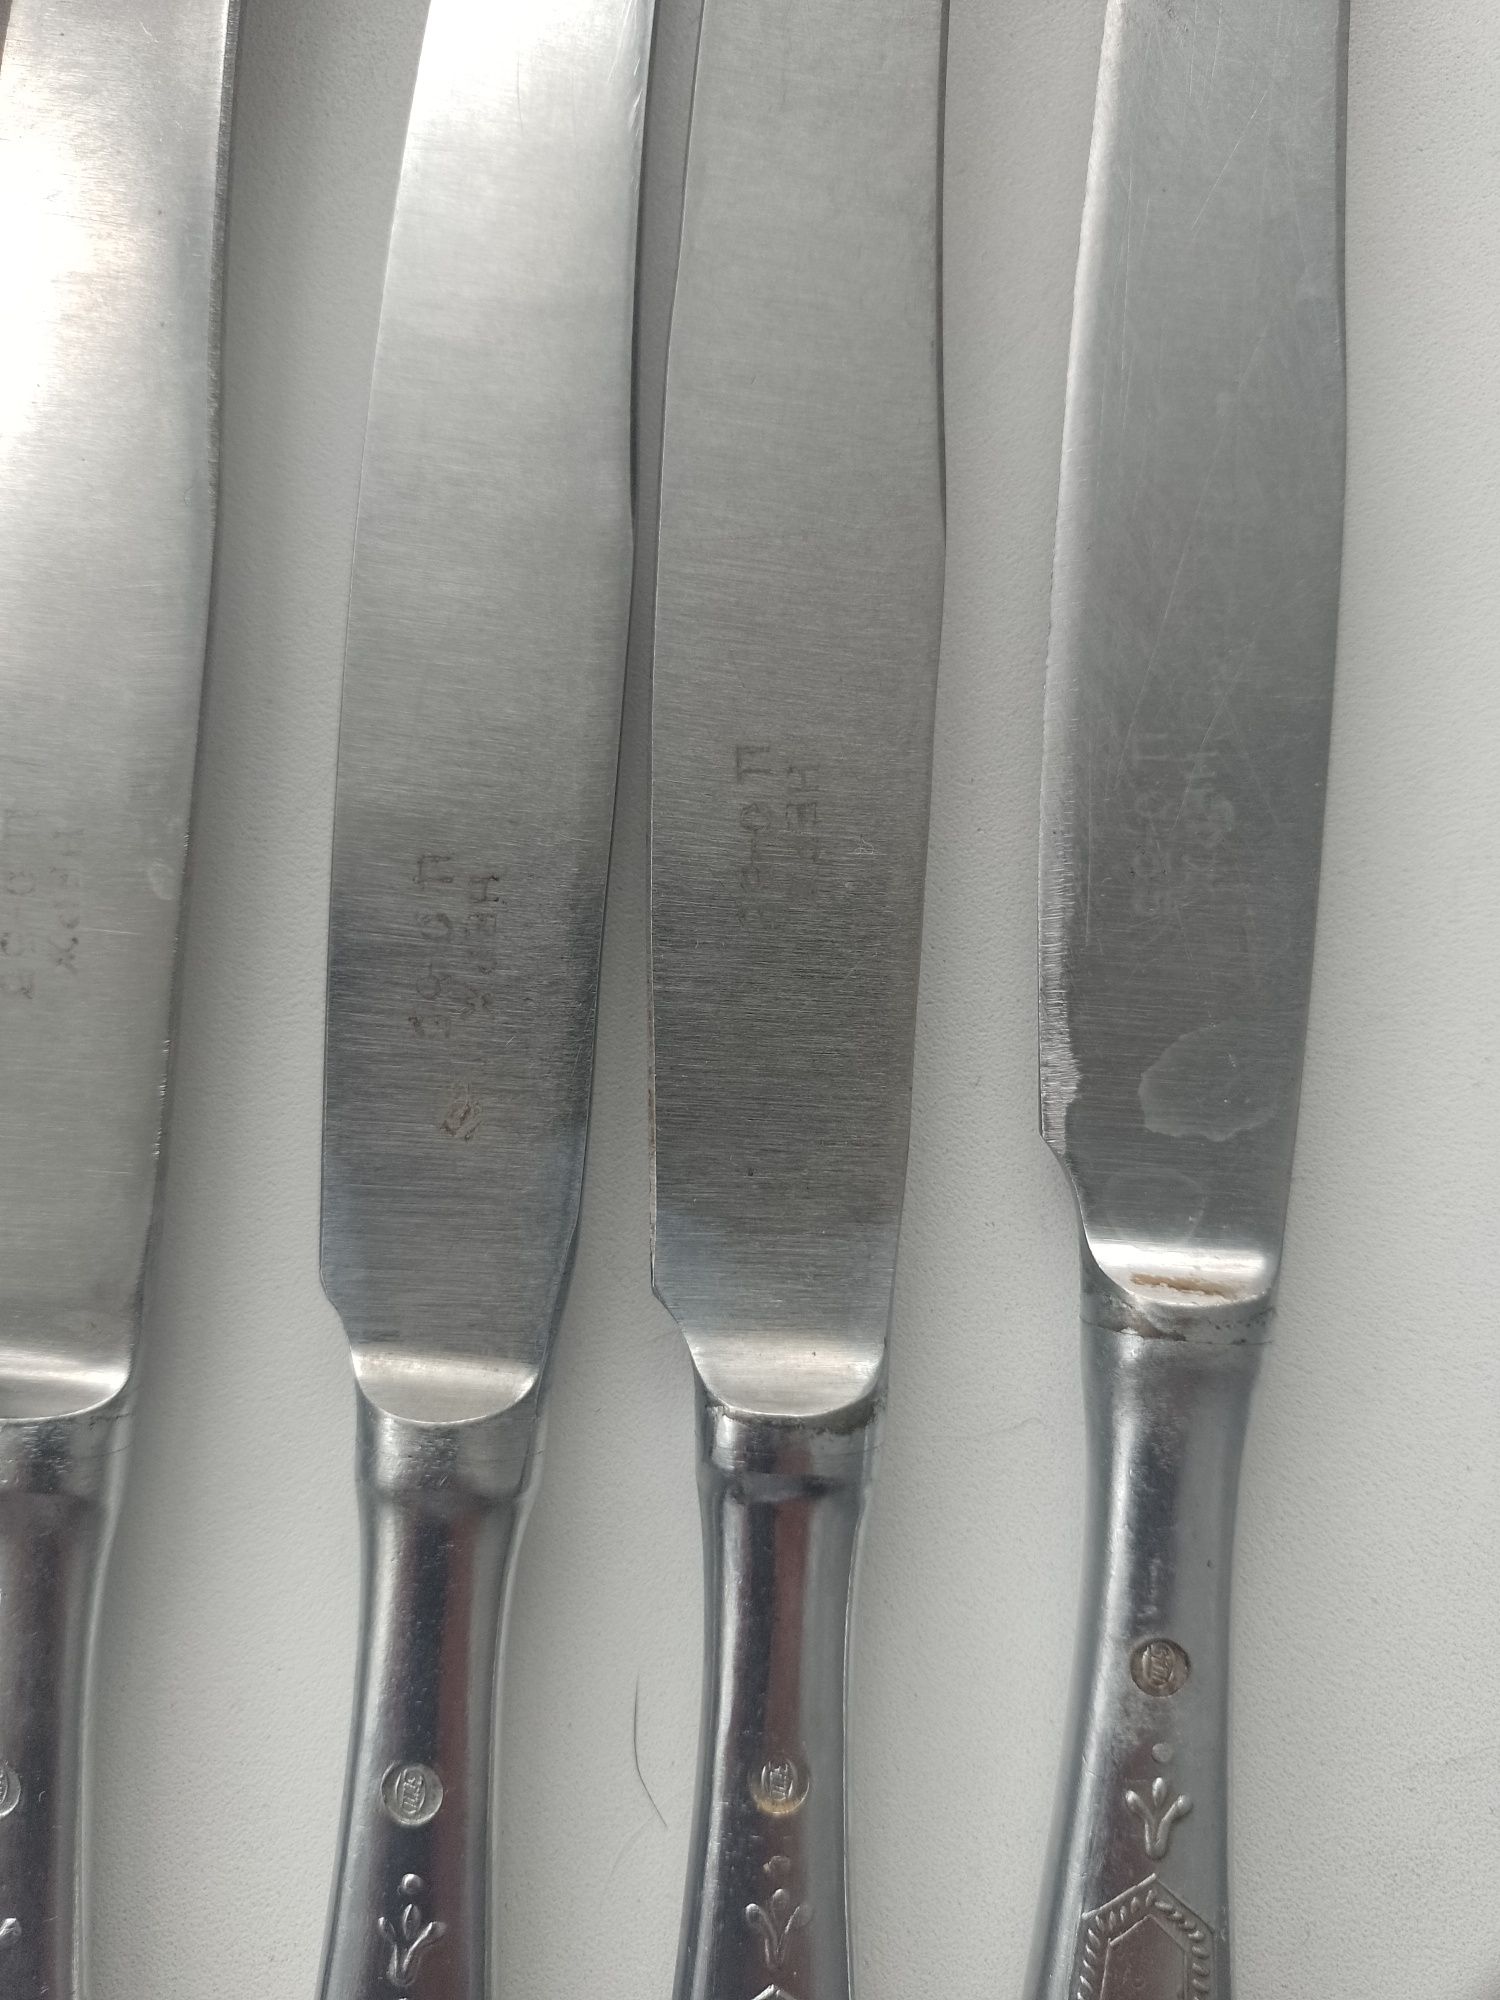 Ножі нержавіючої сталі